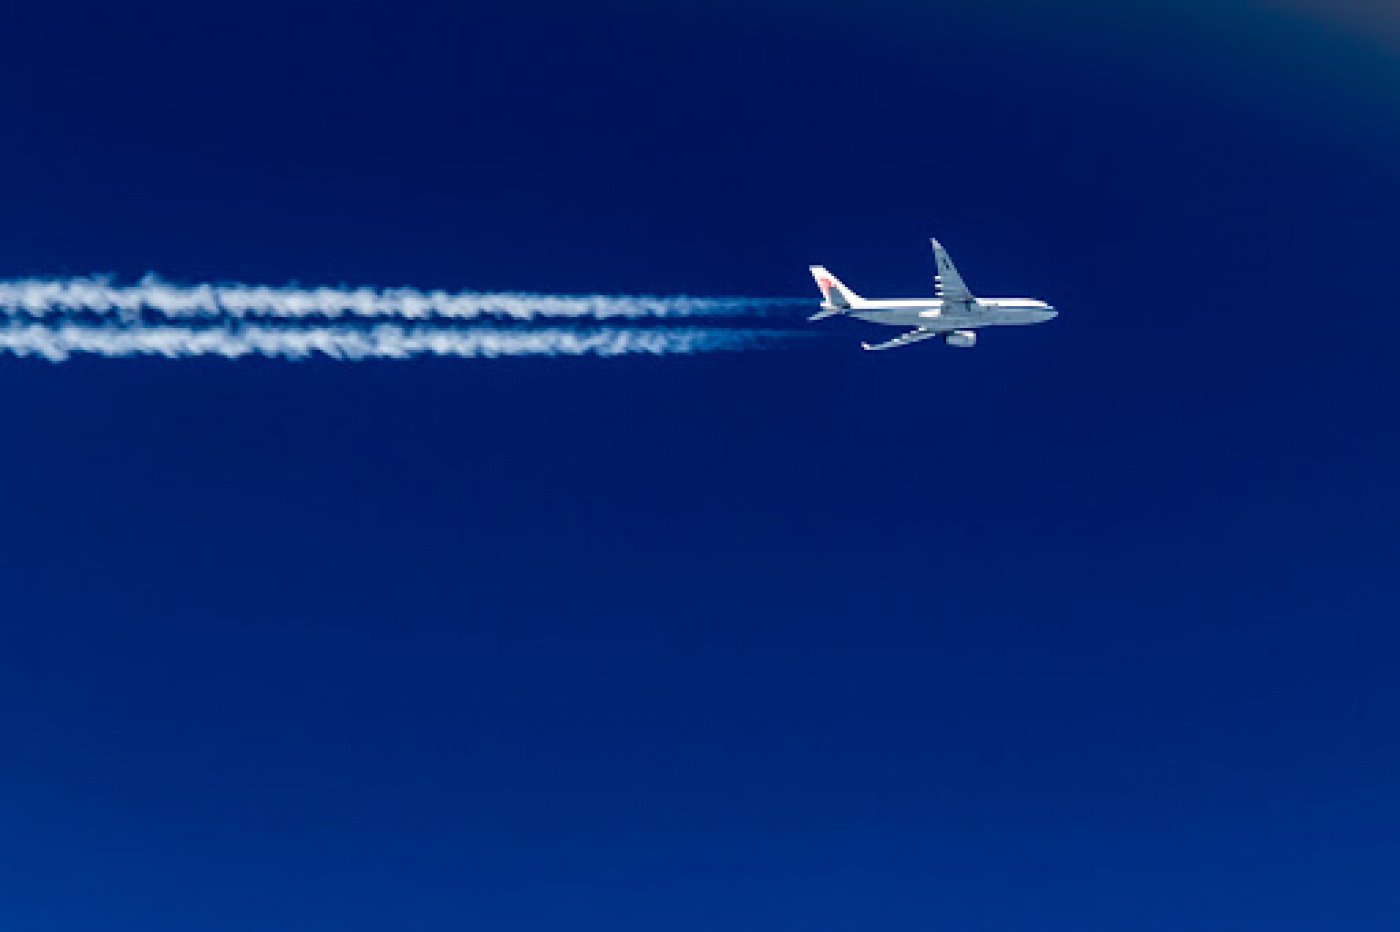 Самолеты над небом. Самолет в небе. Самолет в голубом небе. Cfvjktn DF yt,t. Самолет на фоне неба.